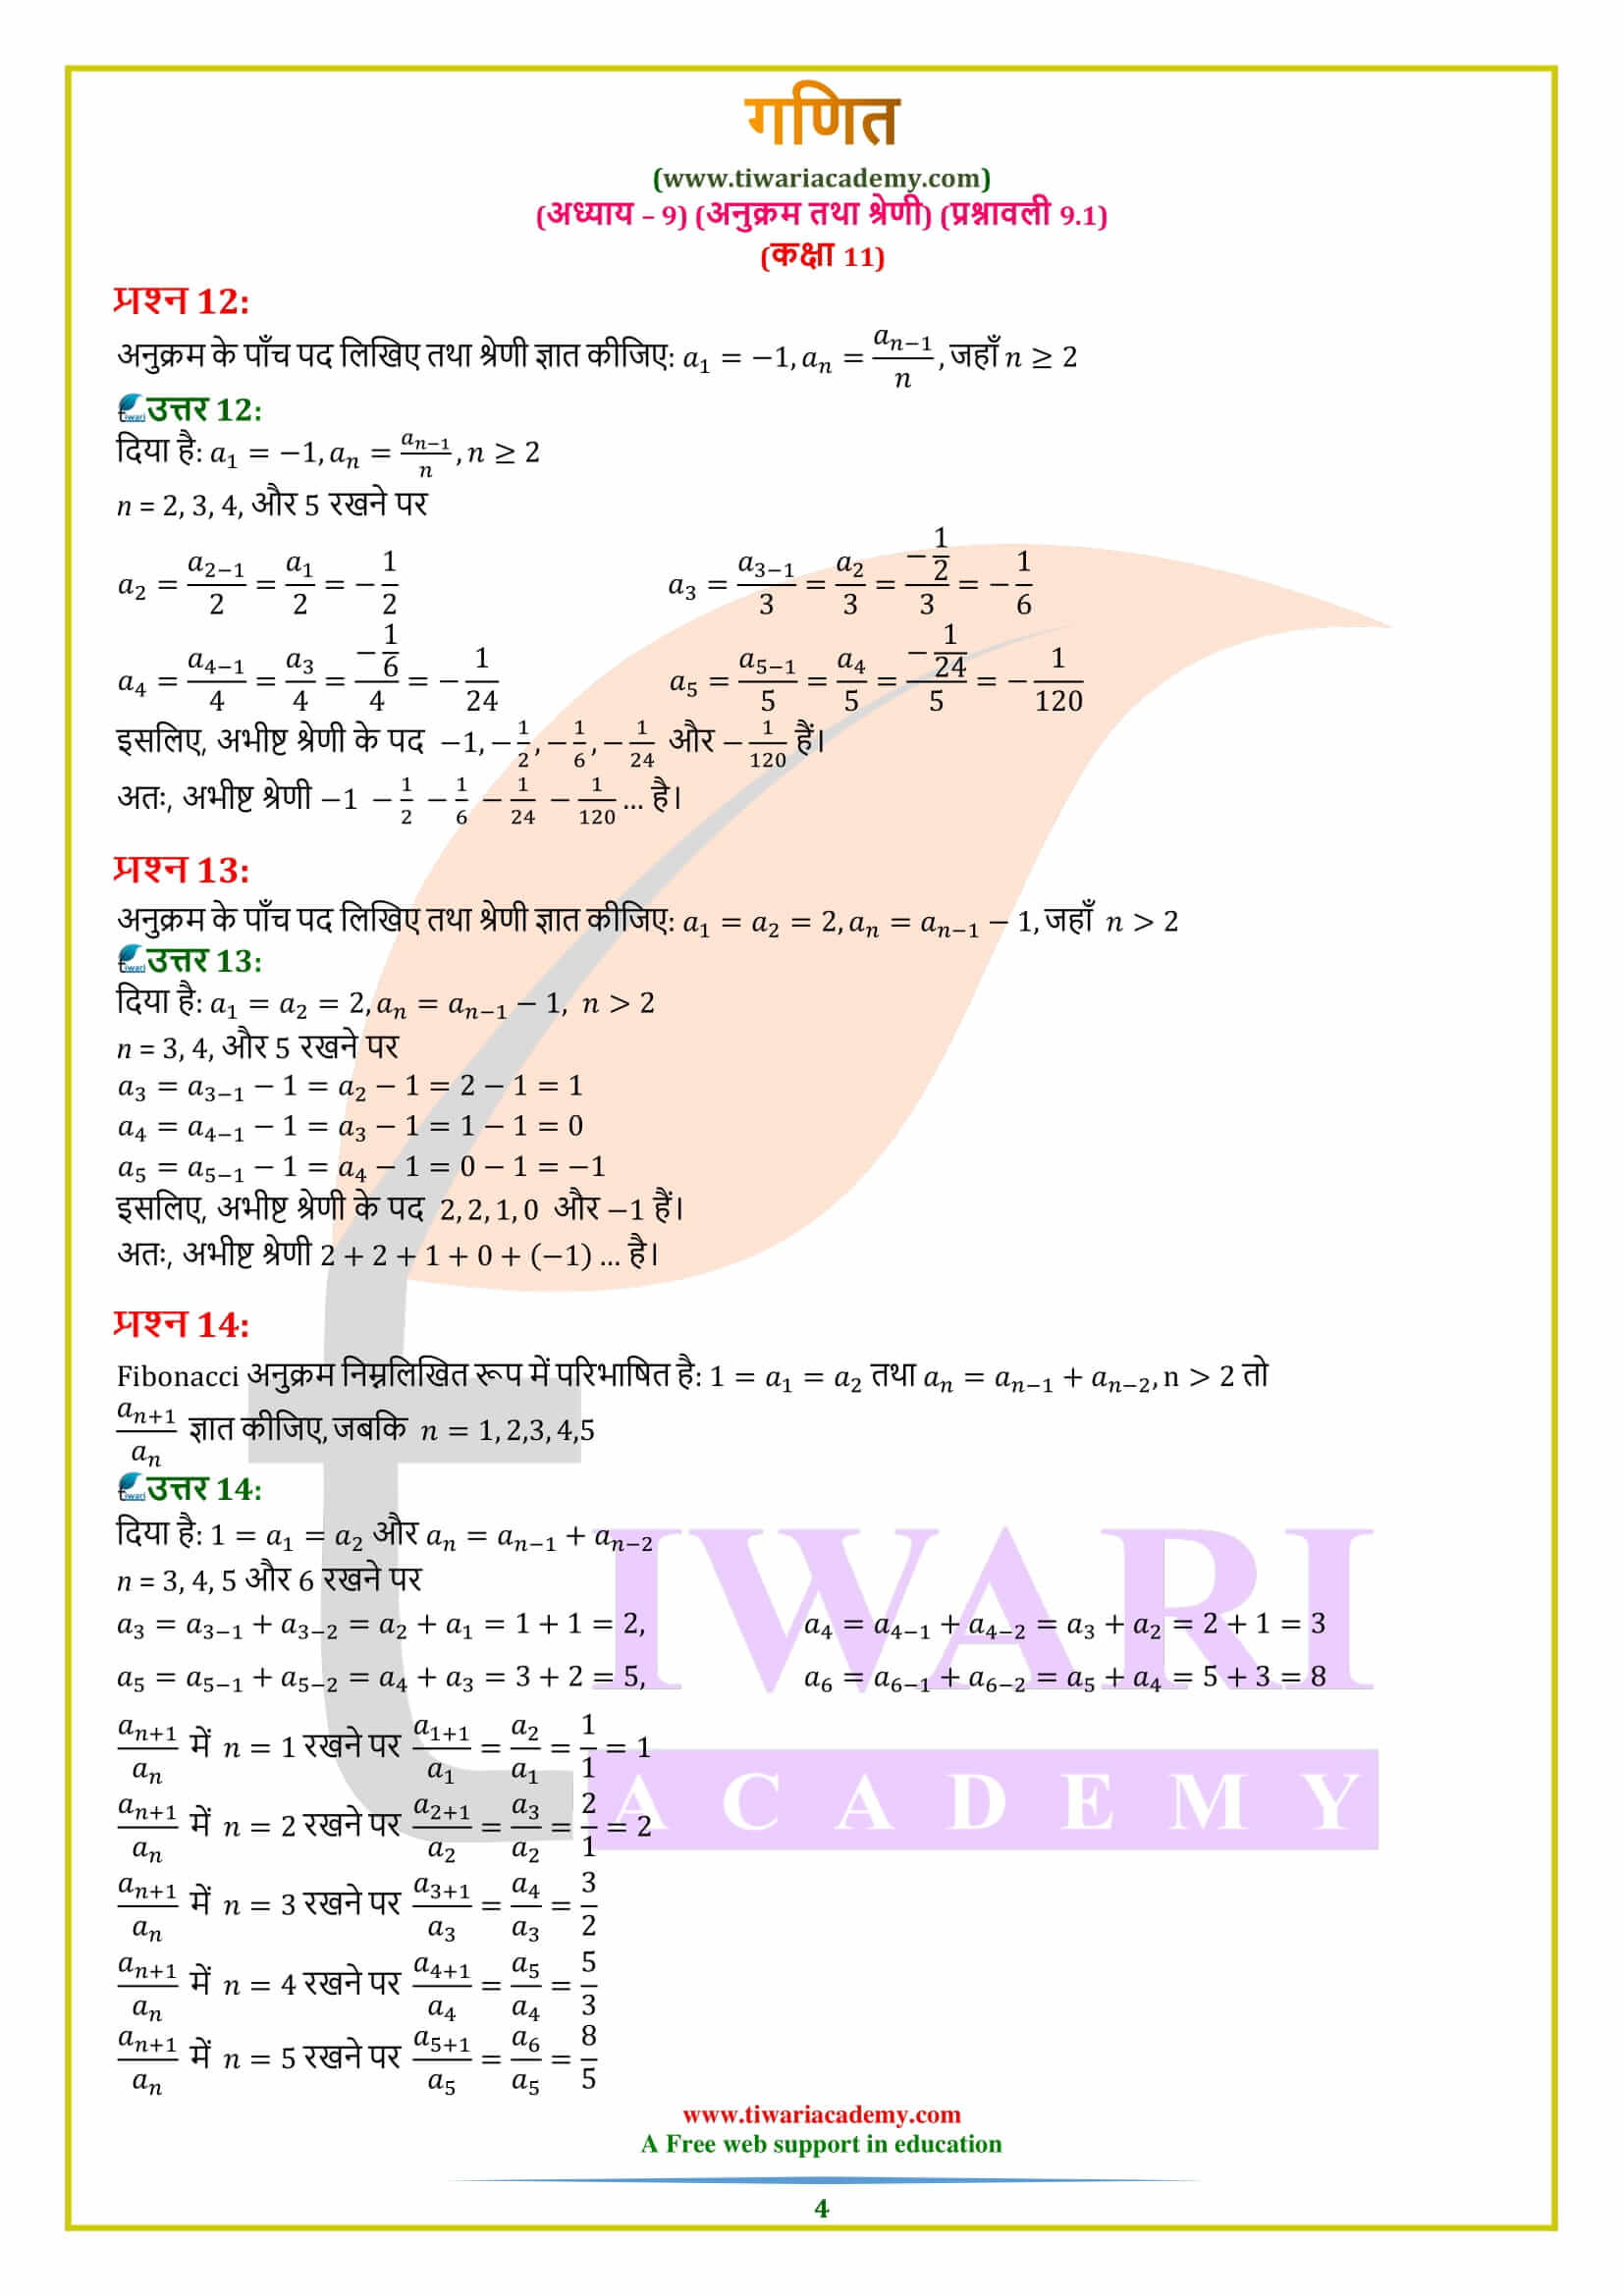 एनसीईआरटी समाधान कक्षा 11 गणित प्रश्नावली 9.1 हिंदी में